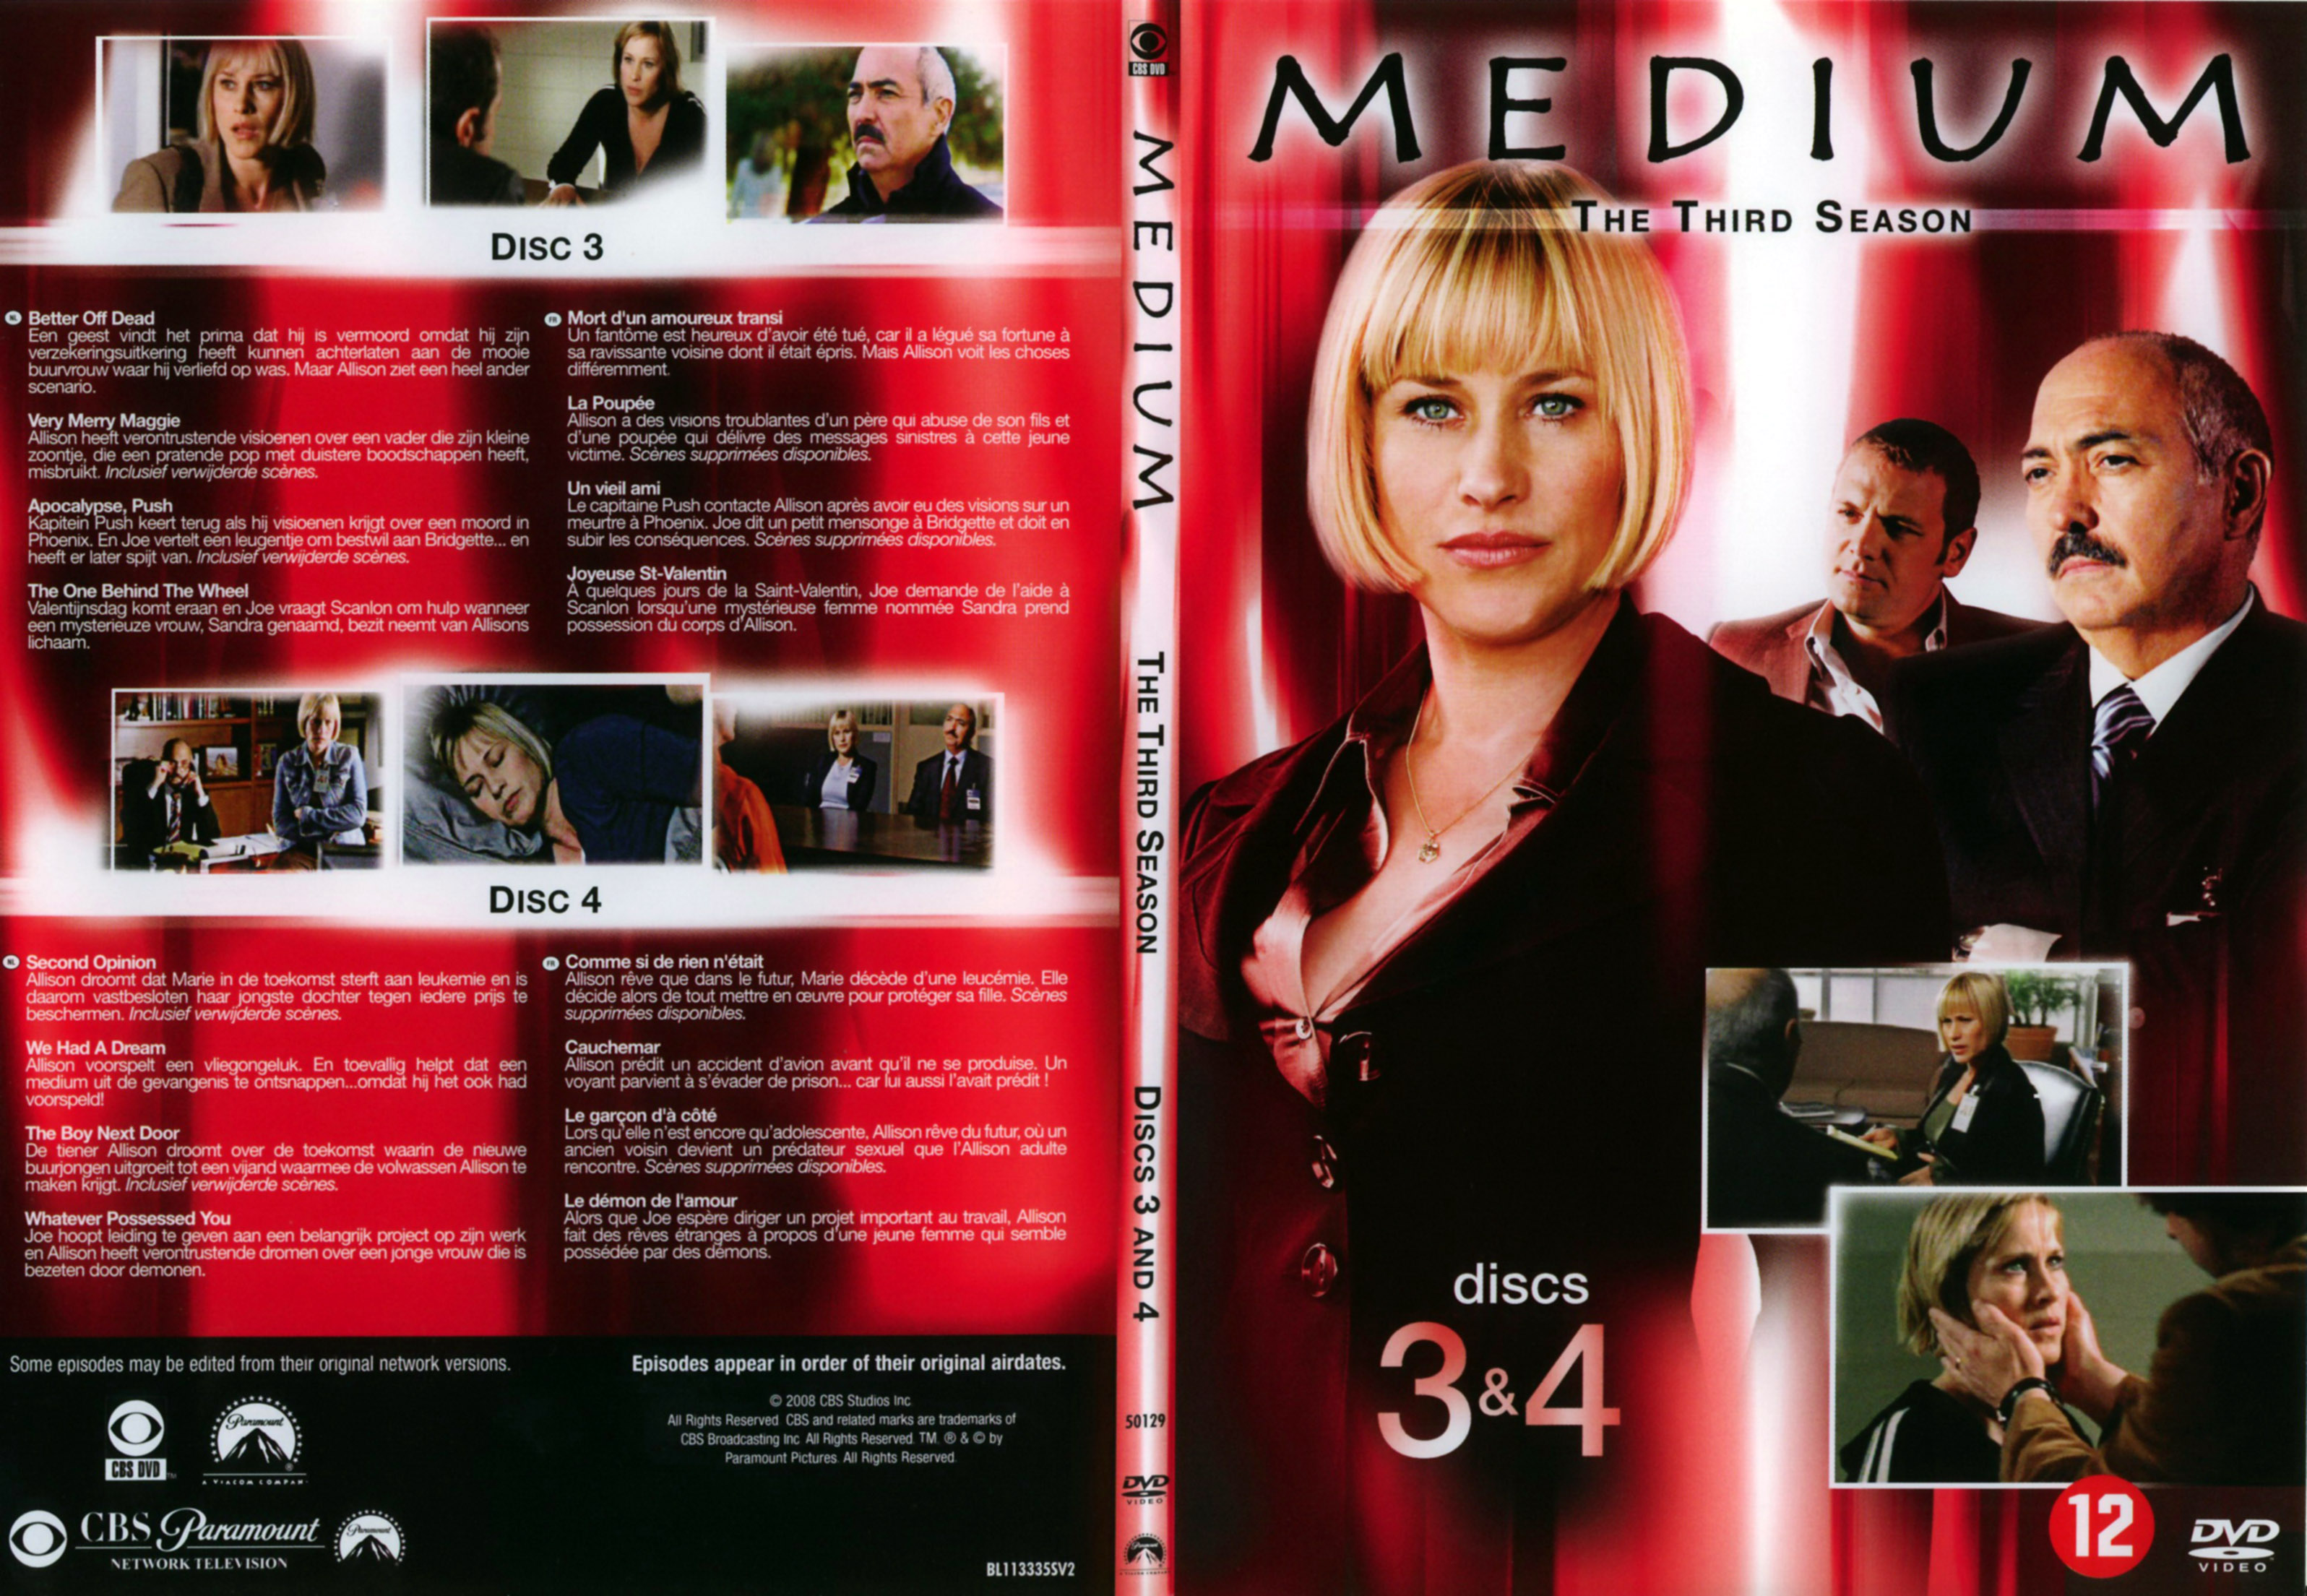 Jaquette DVD Mdium Saison 3 DVD 2